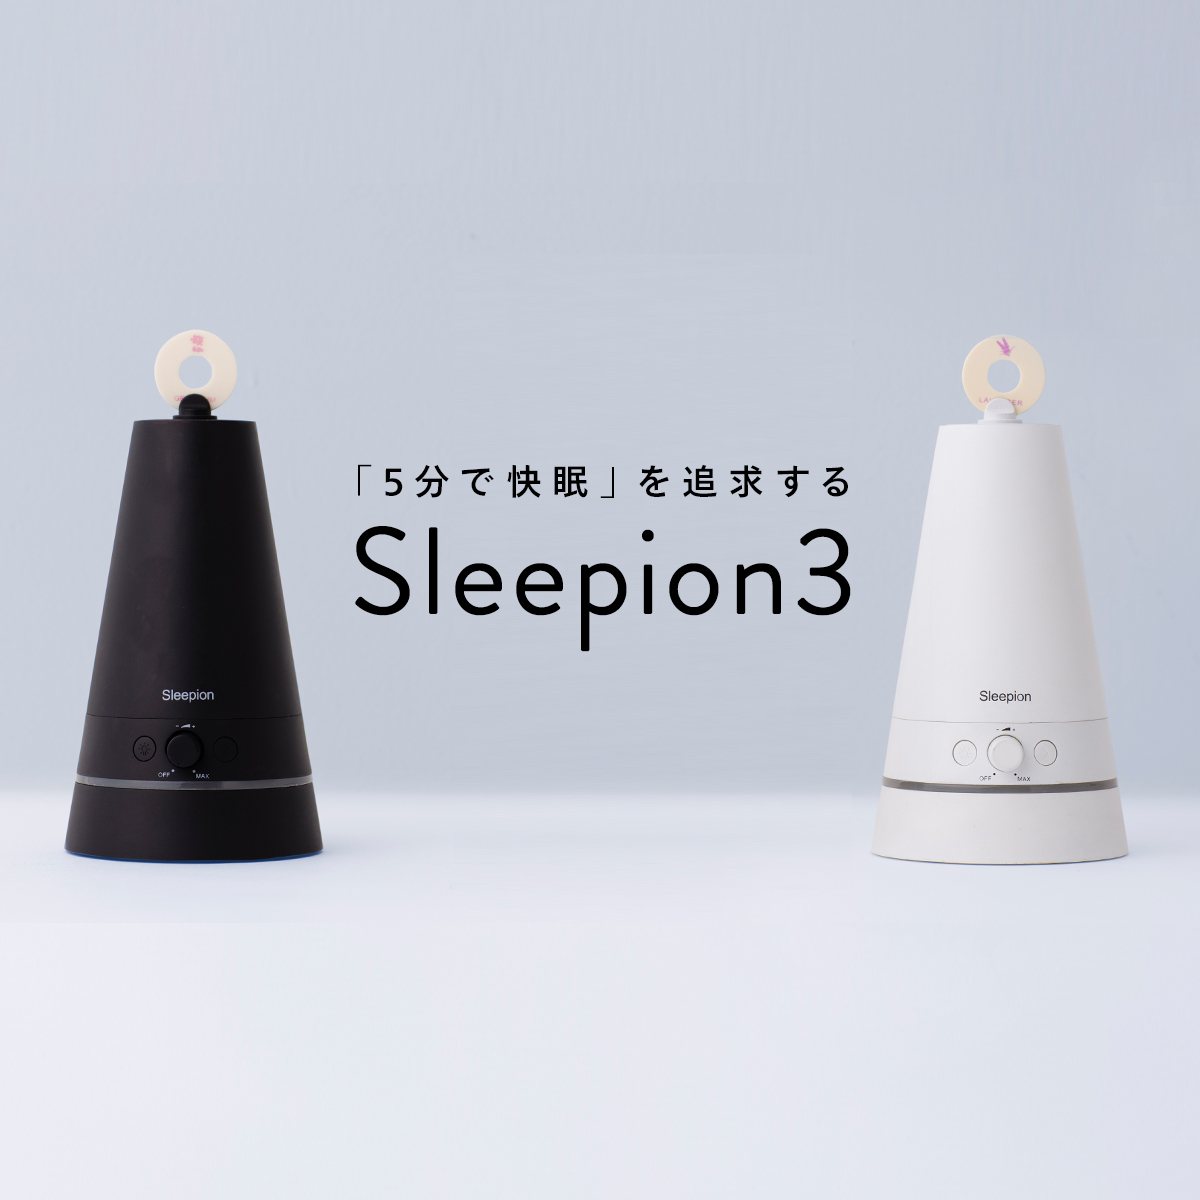 自然な音、天然の香り、安らげる光。 快眠サポートツール「Sleepion3」